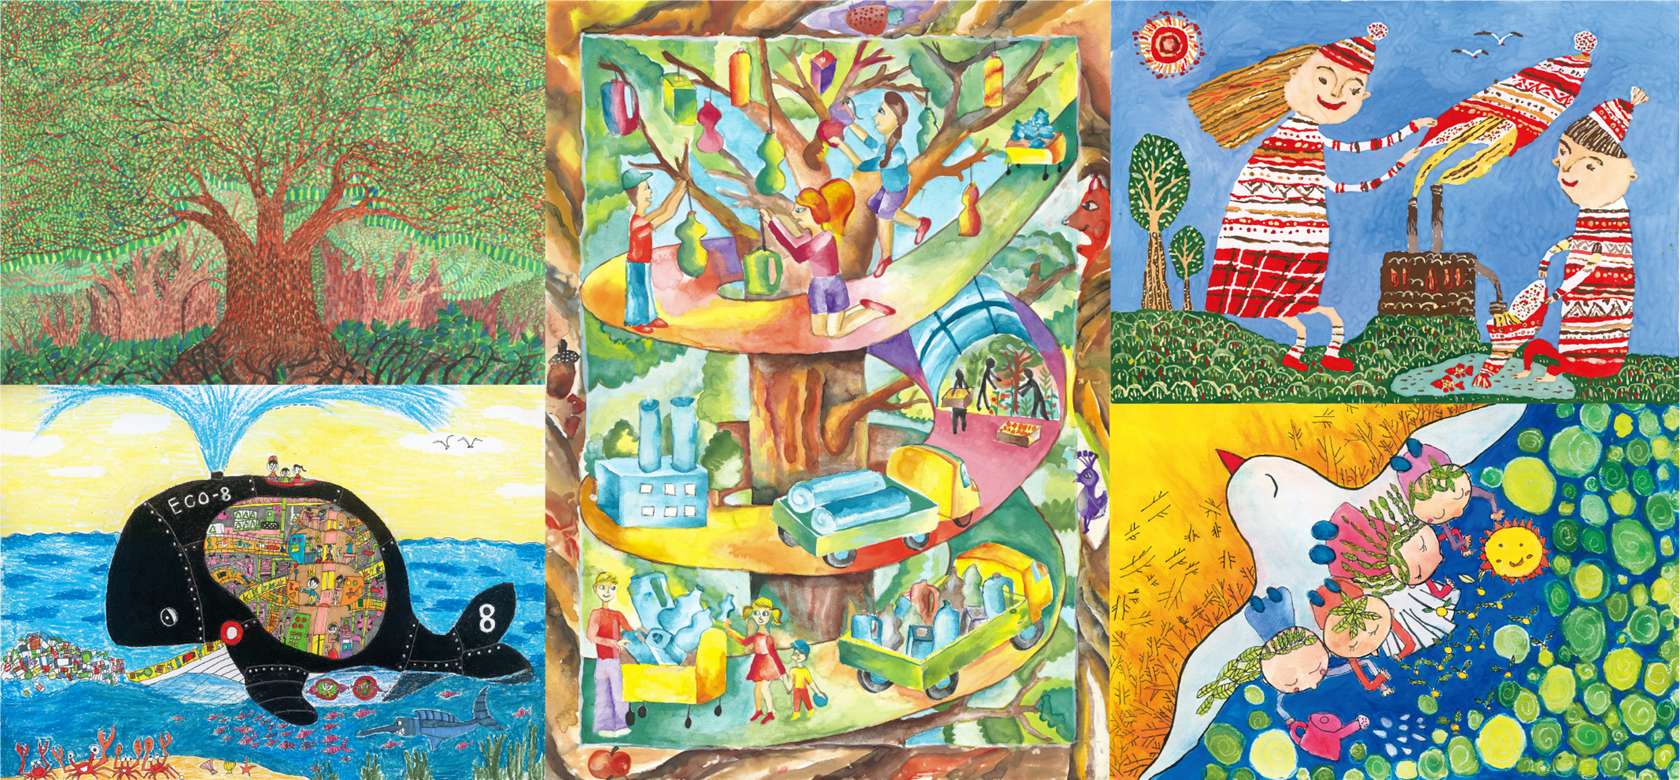 花王 世界の子どもたちの未来への願い 花王国際こども環境絵画コンテスト入賞作品から を開催